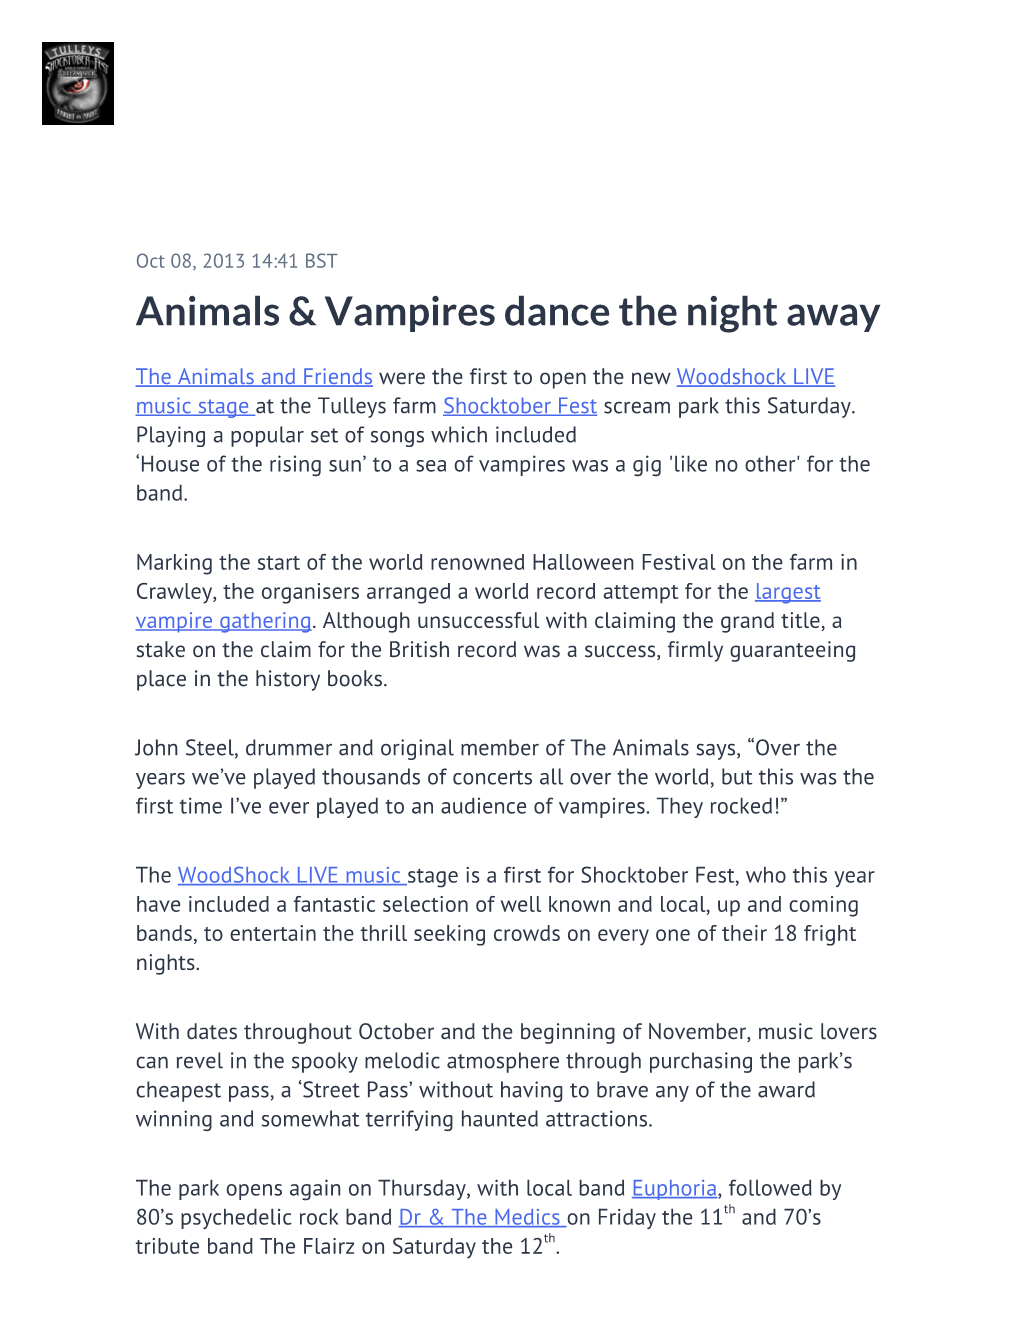 Animals & Vampires Dance the Night Away